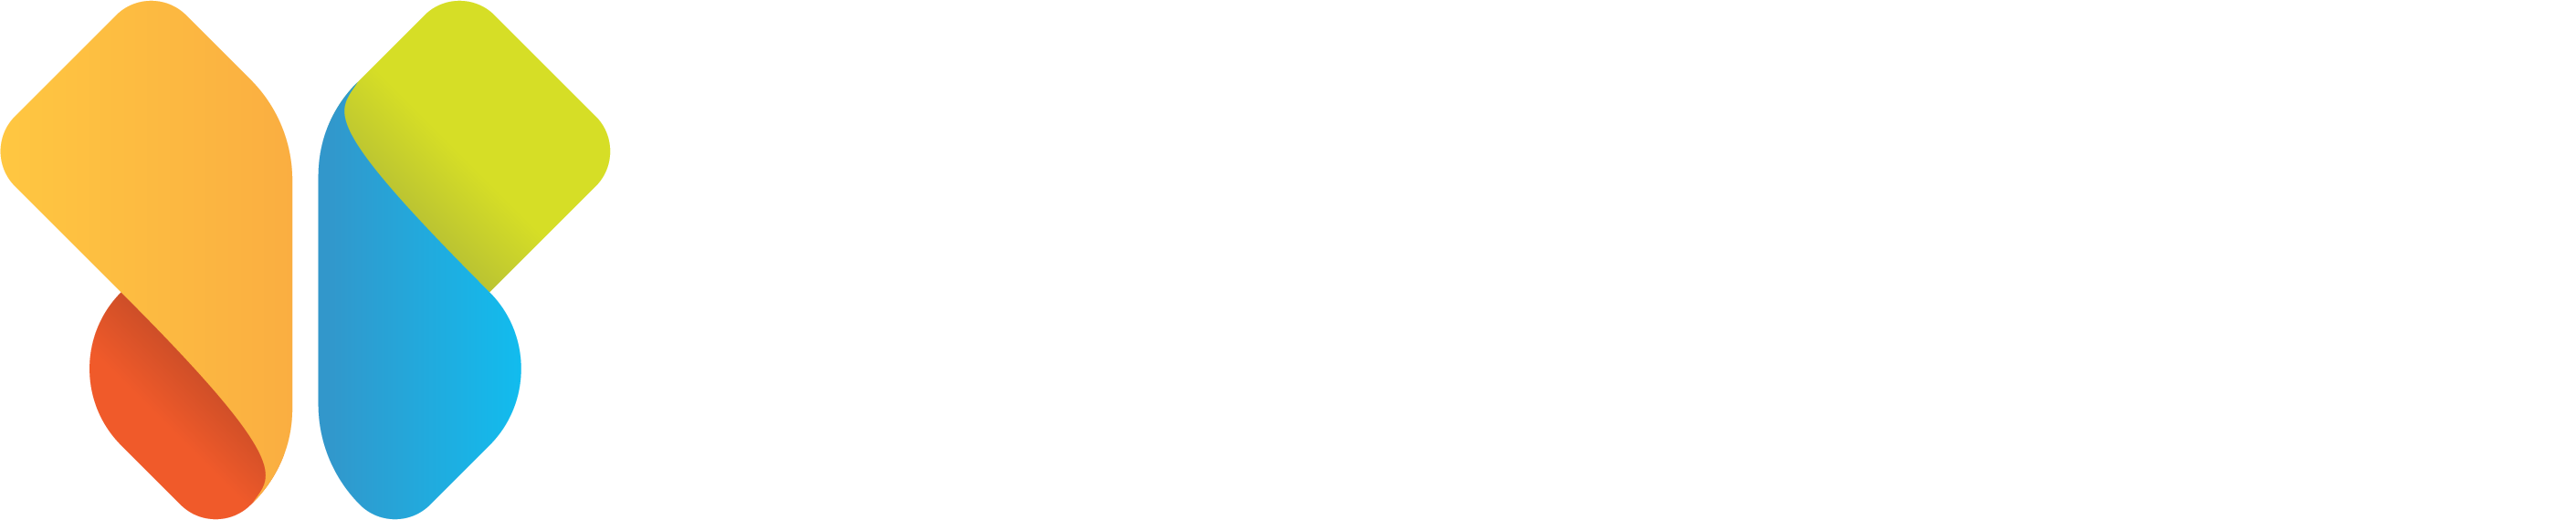 Butterfold Logo-02